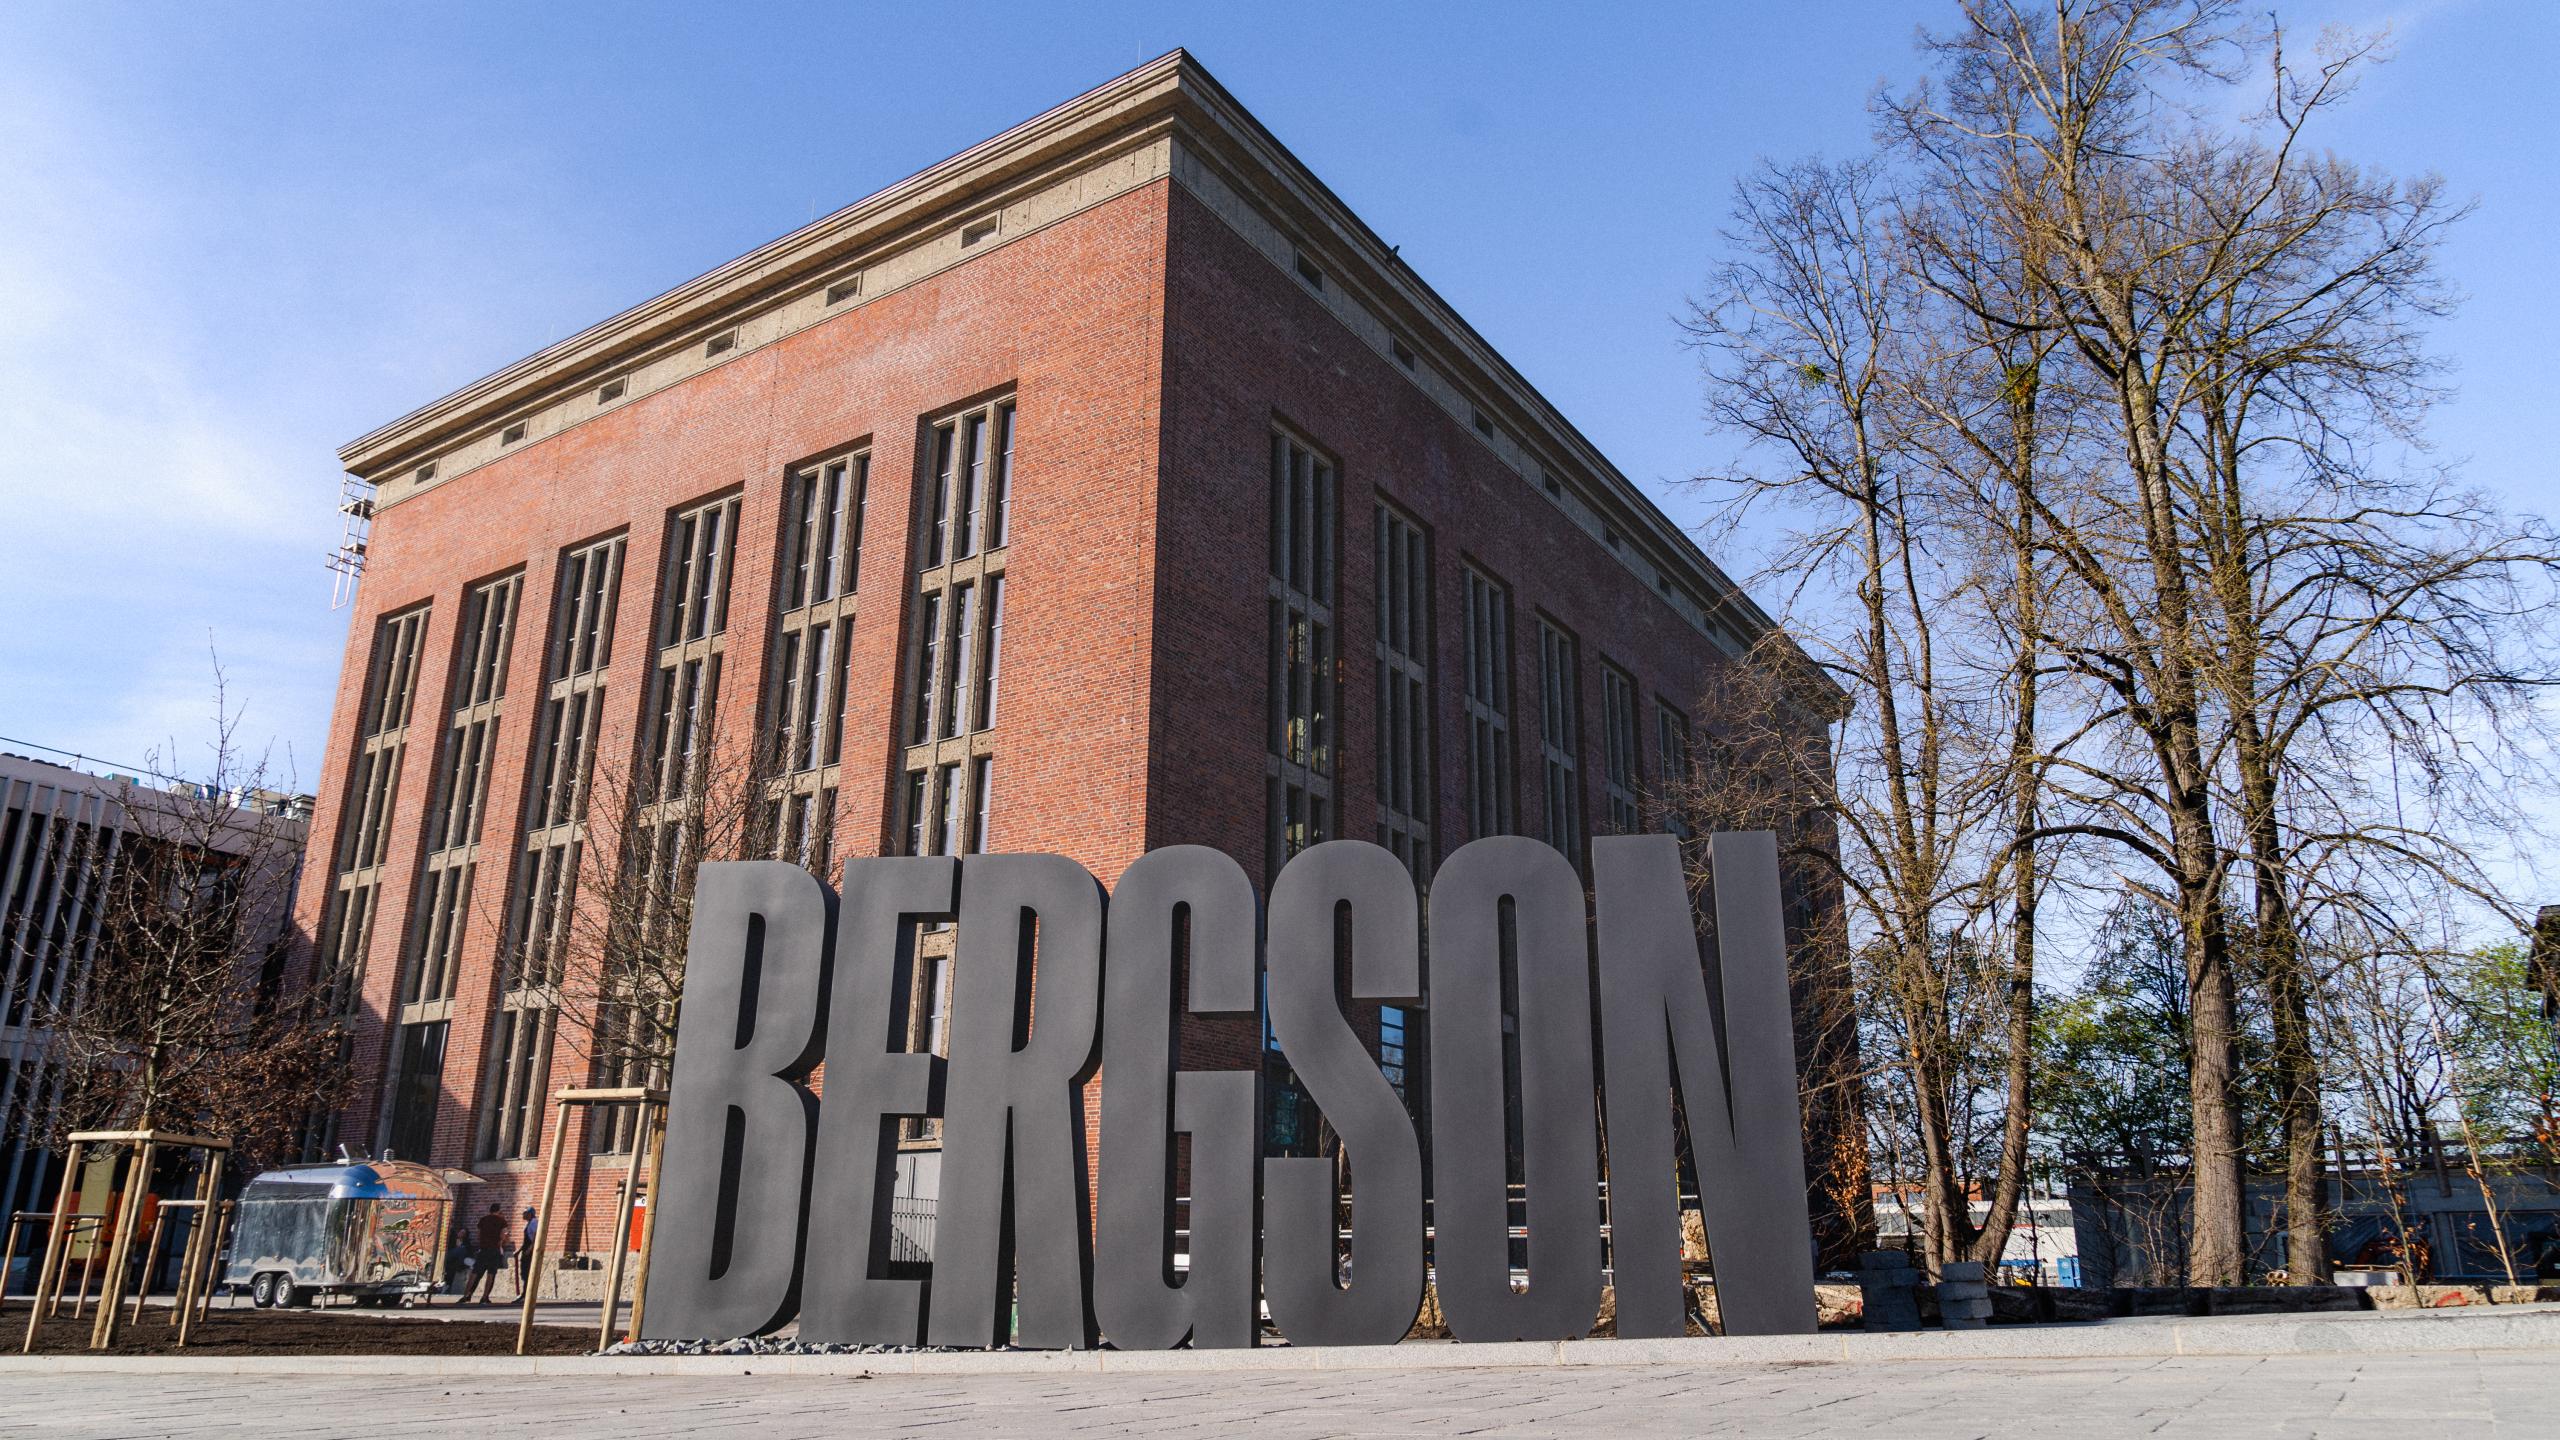 Bergson Kunstkraftwerk Aussen mit Schriftzug